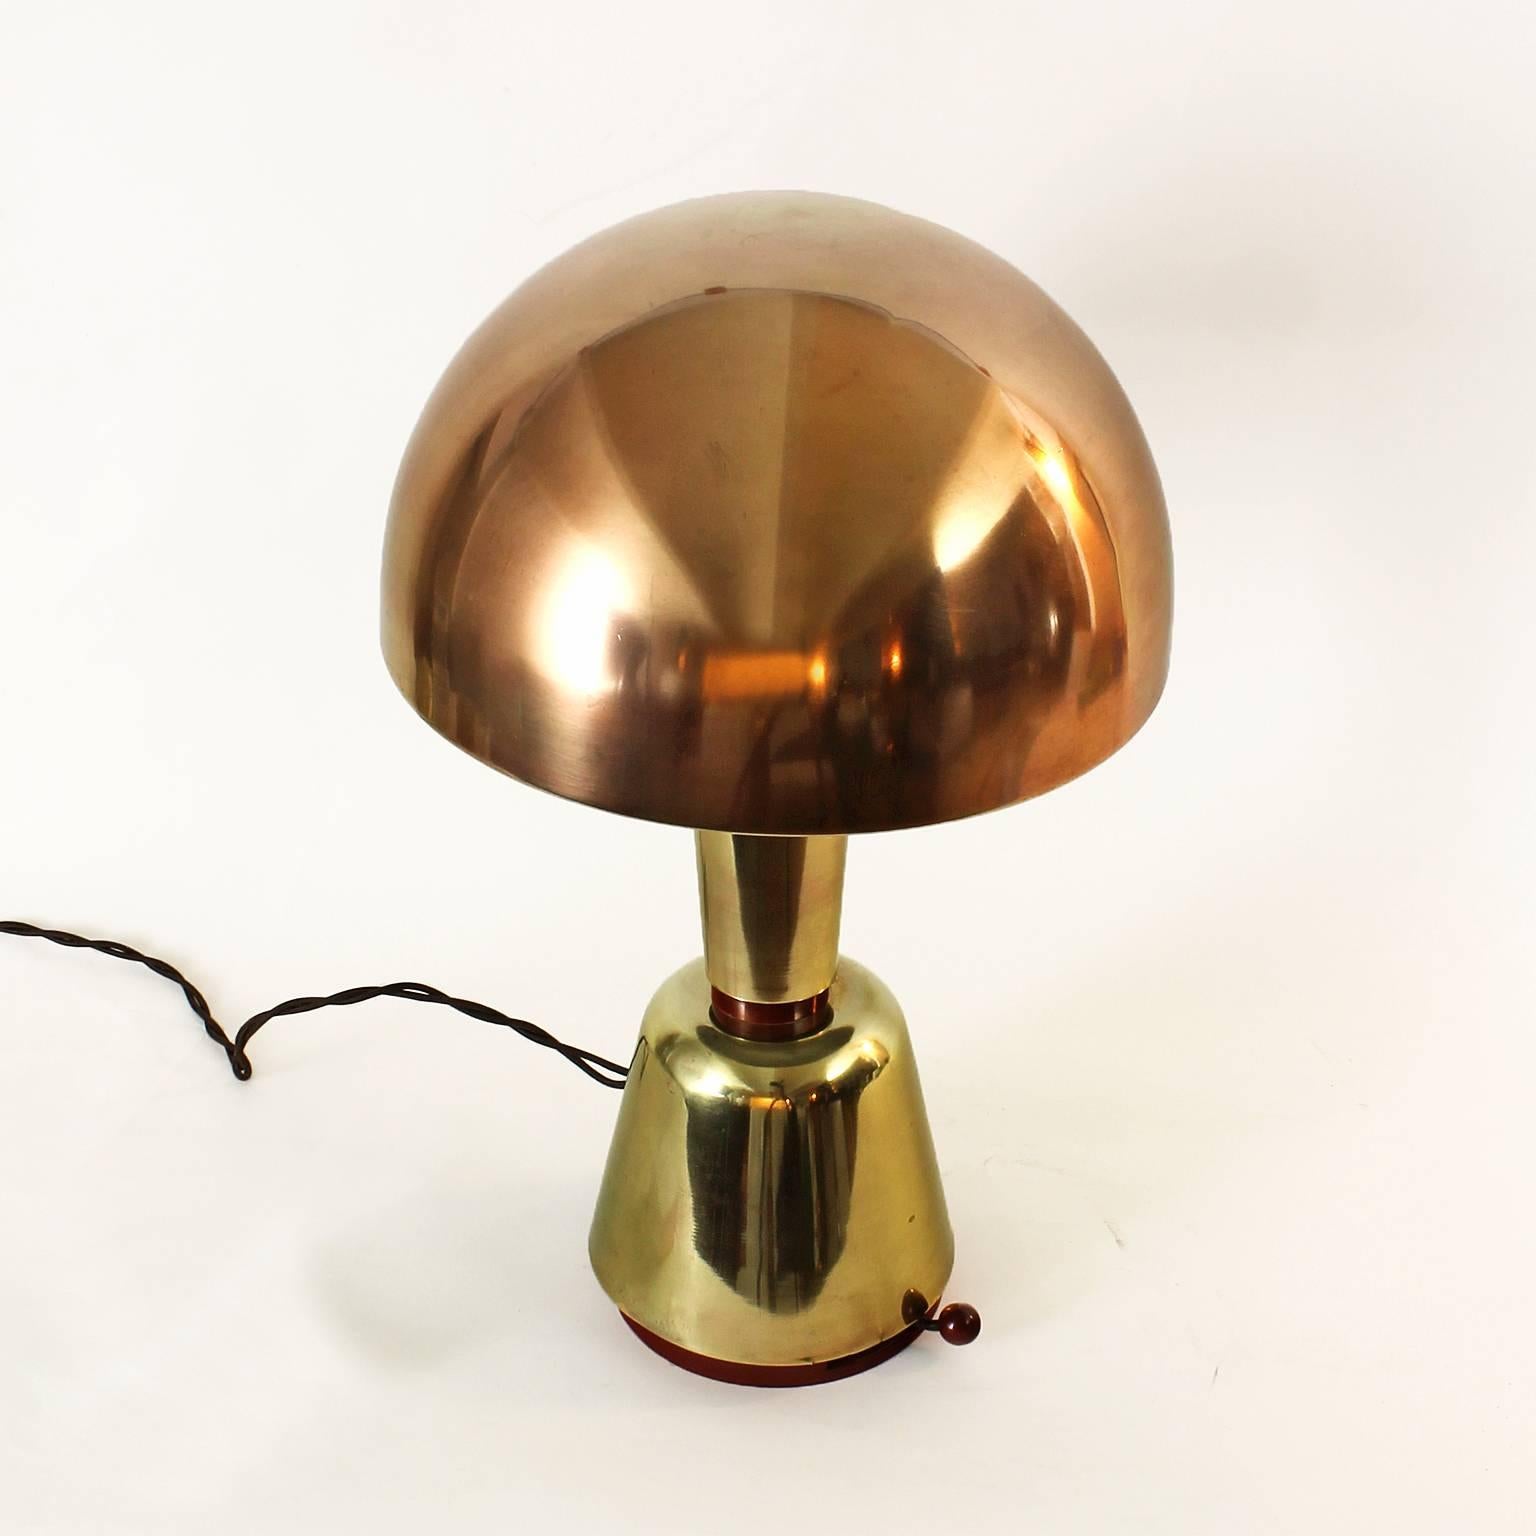 1920s desk lamp